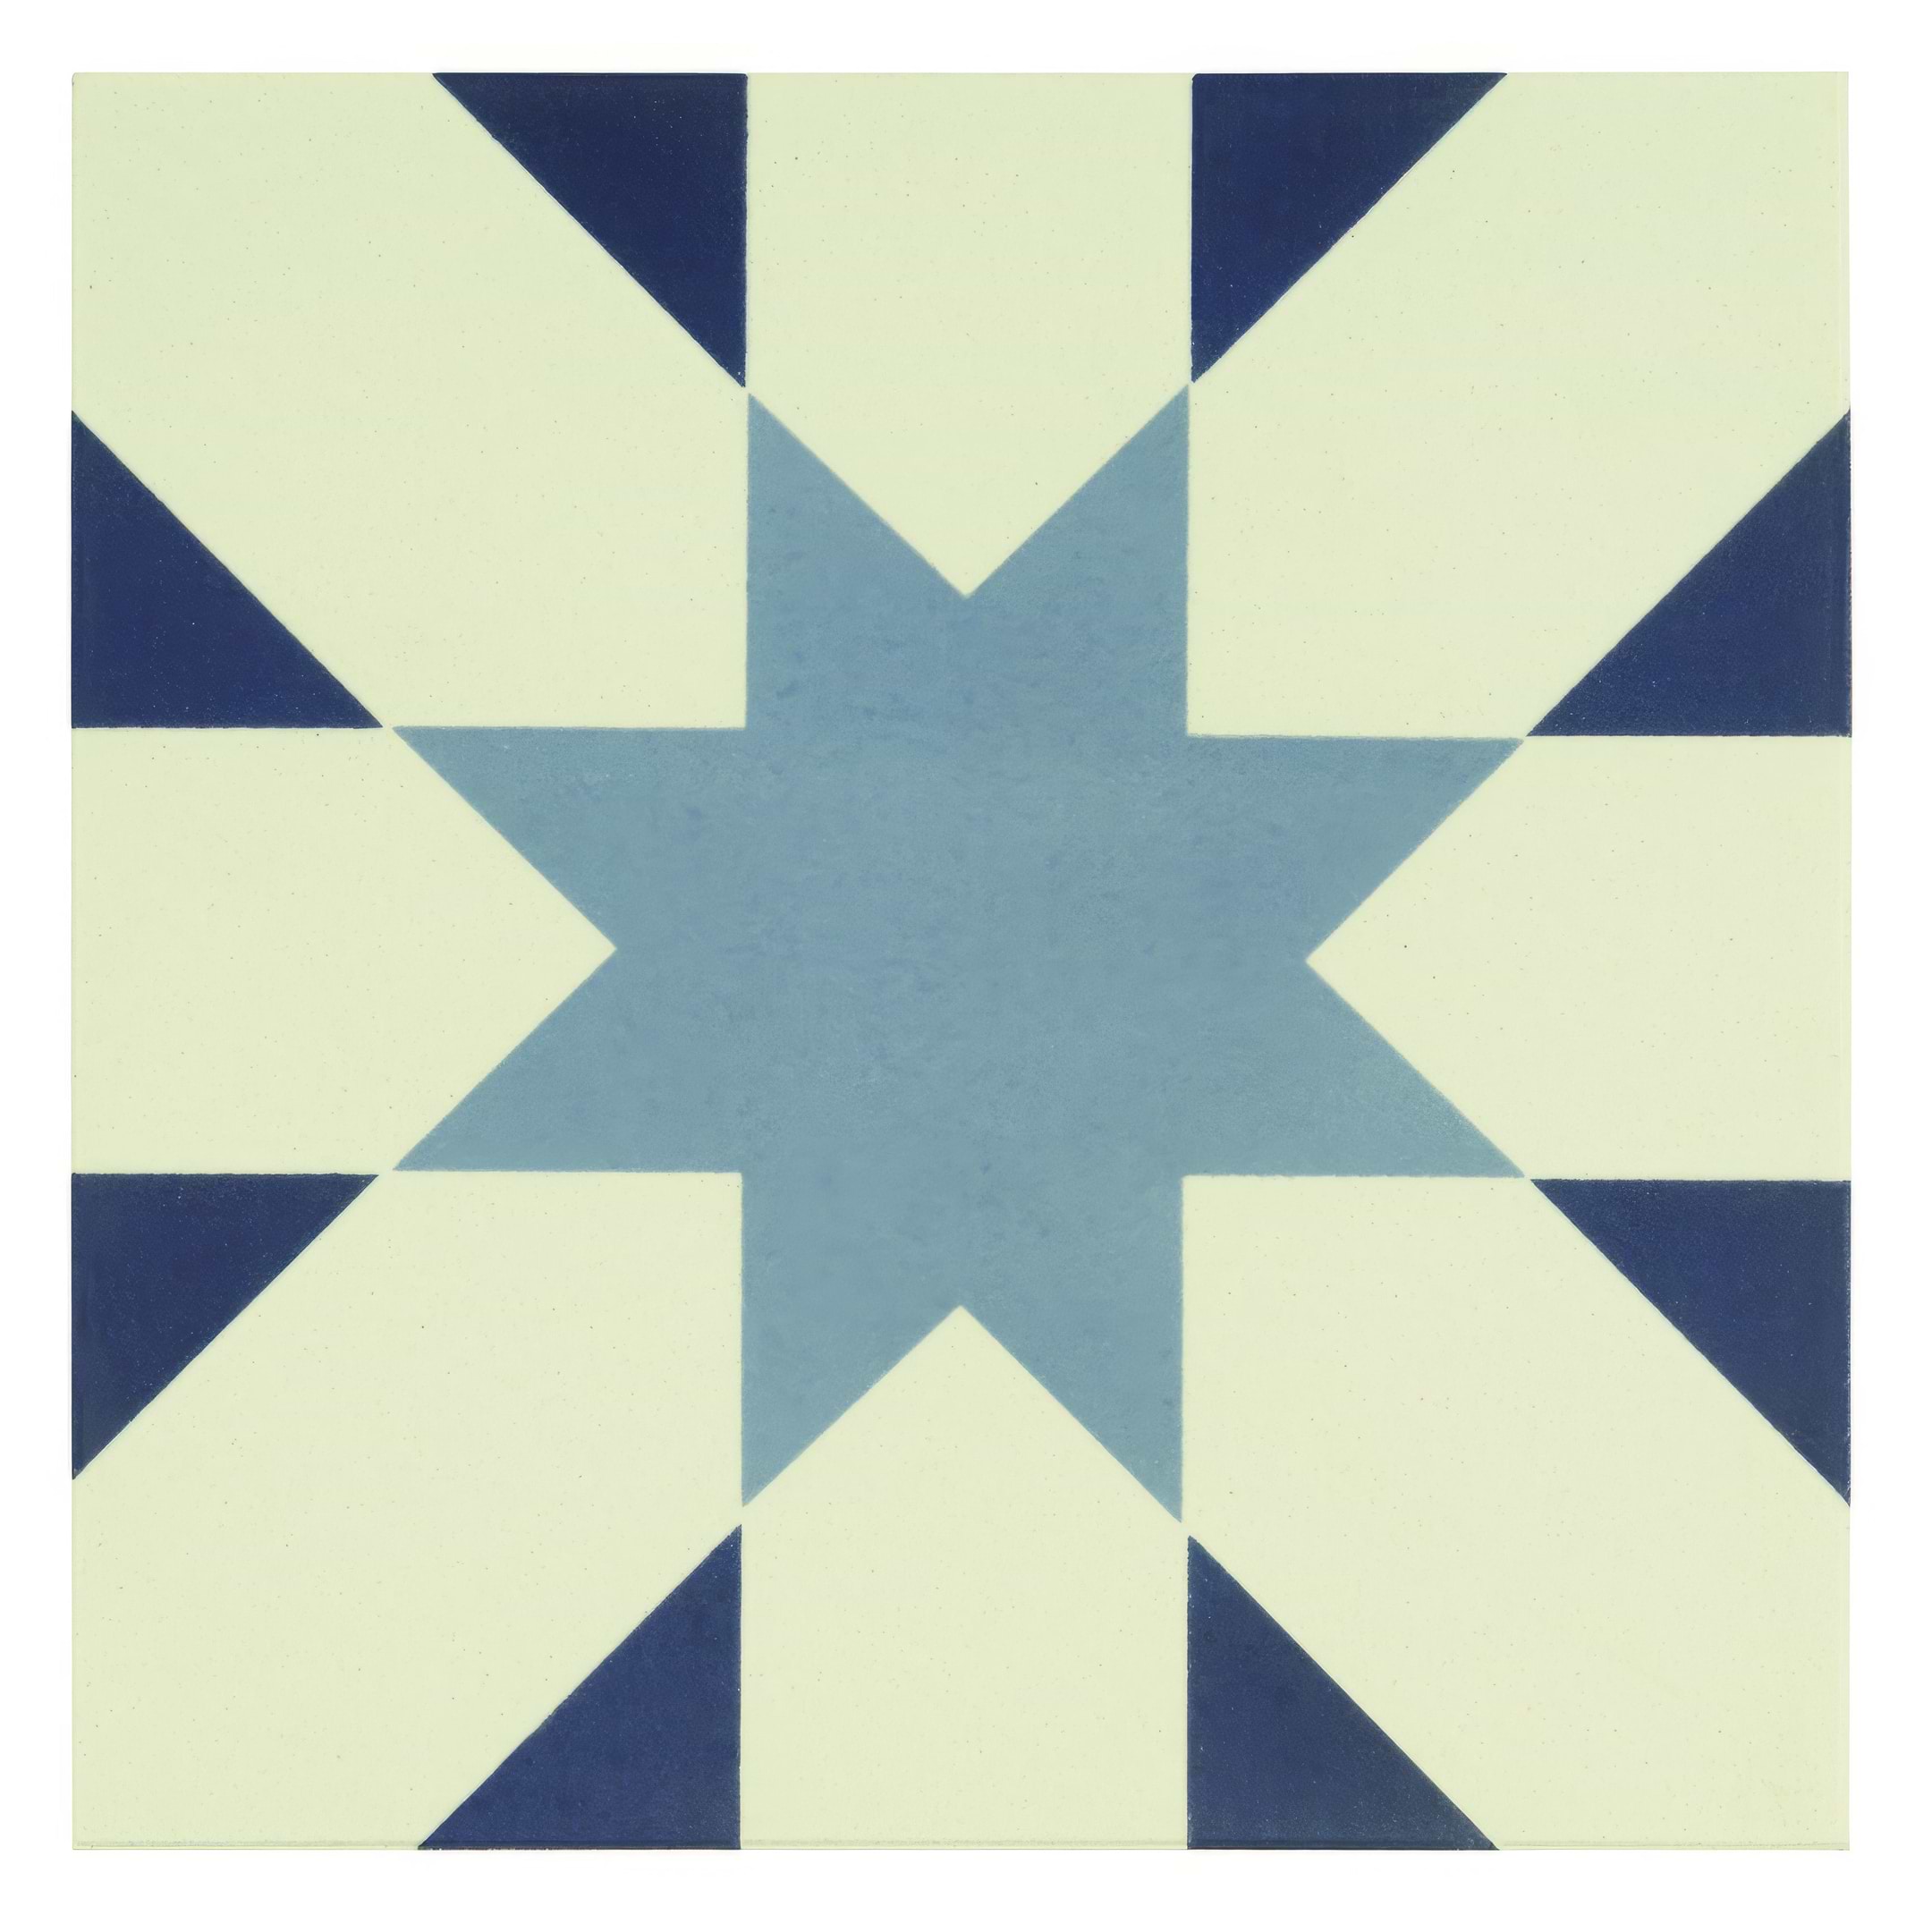 Seville Light Blue and Dark Blue on Dover White - Hyperion Tiles